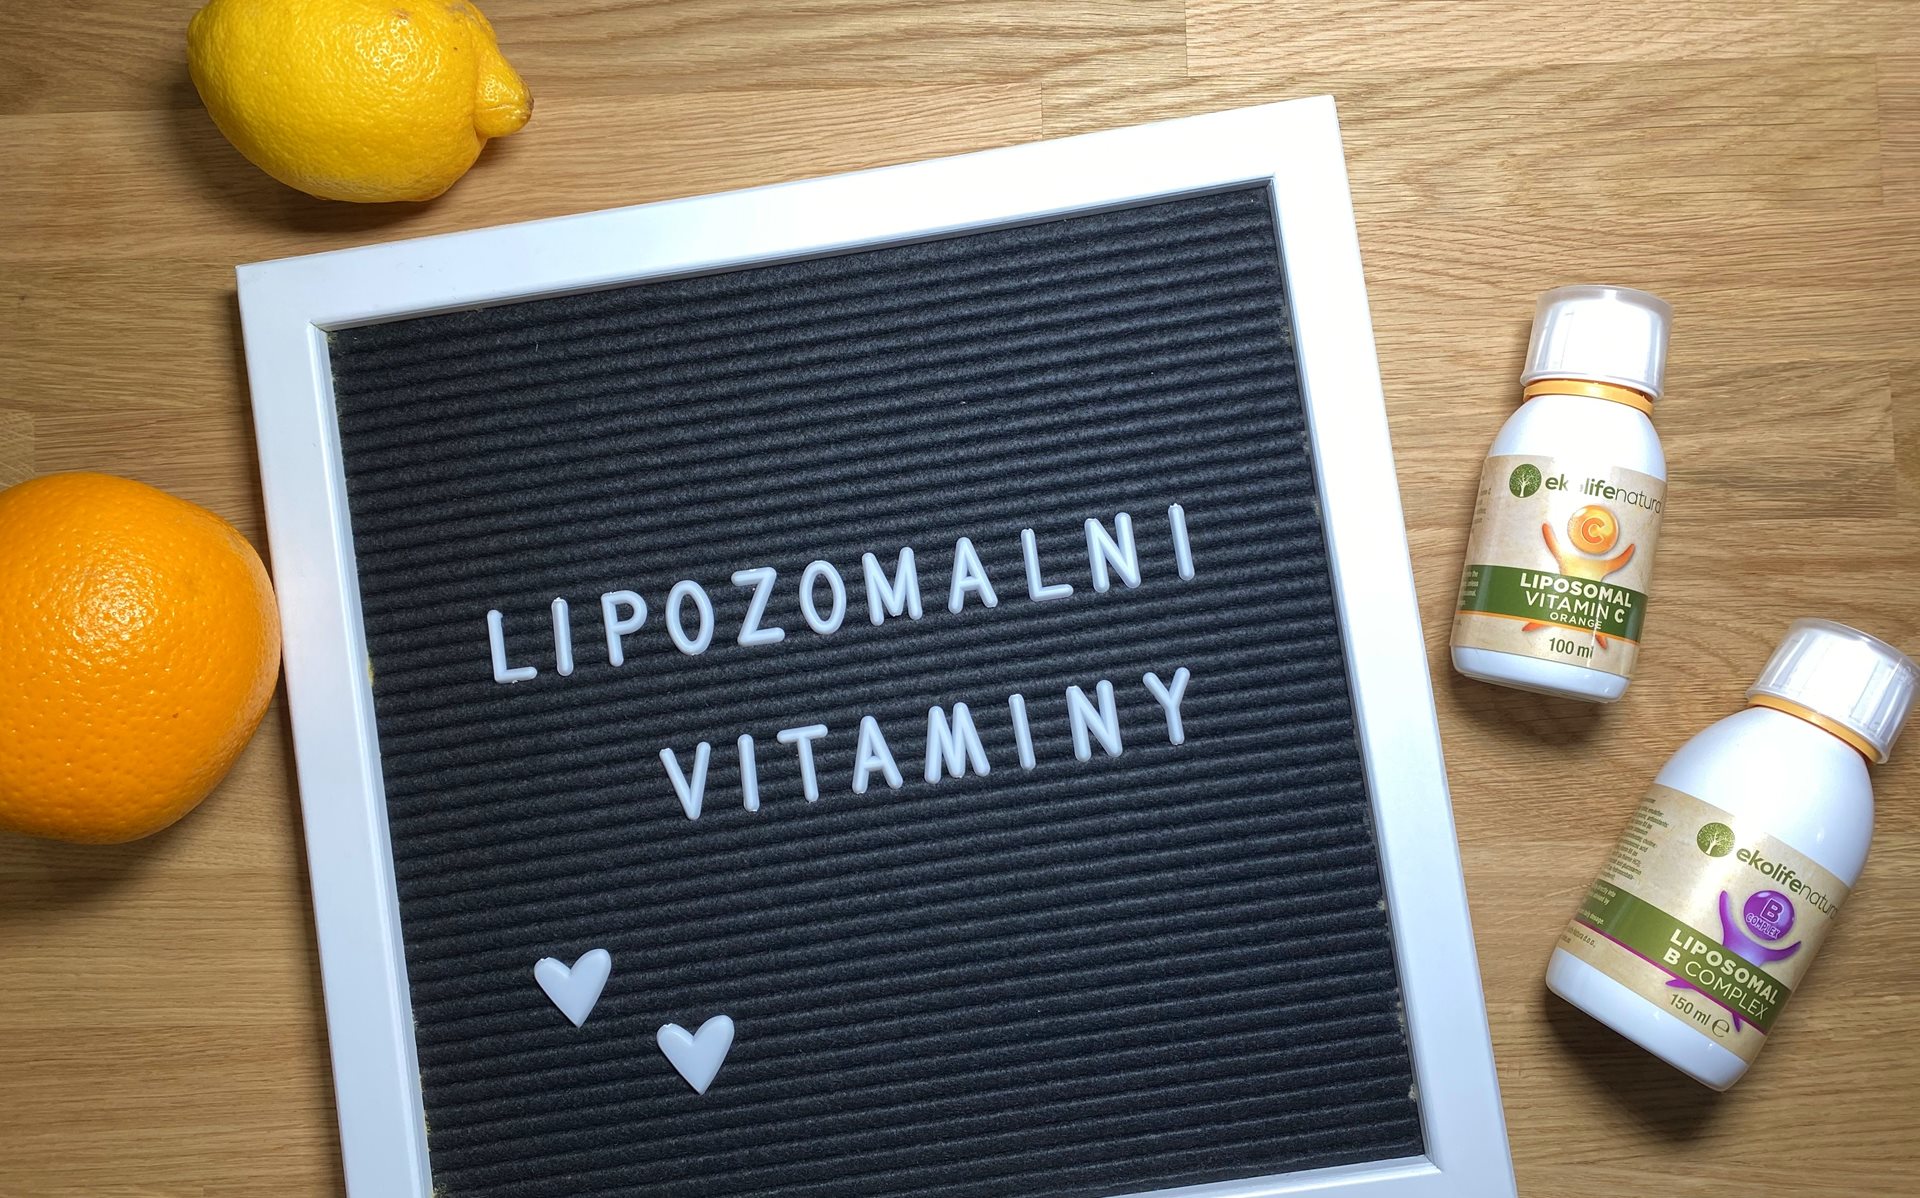 Bojujte proti virům lipozomálními vitamíny